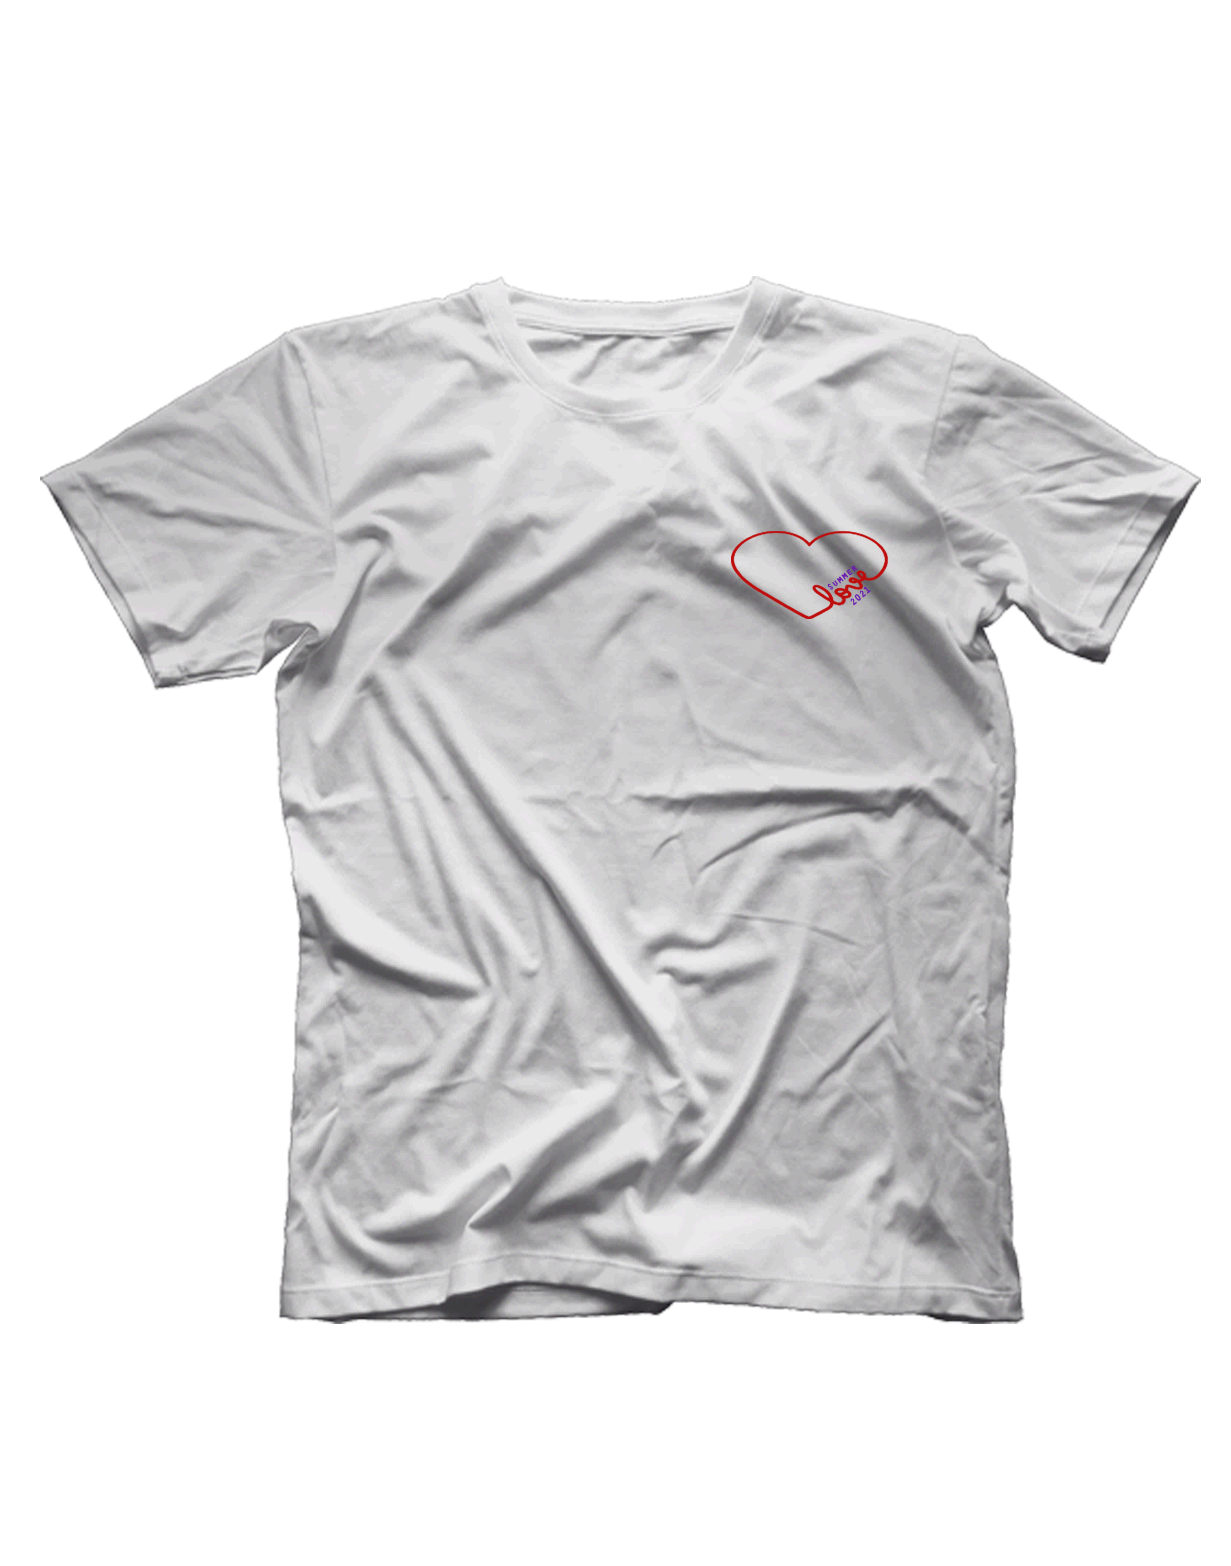 Urban Innovators "Summer Love" Short Sleeve T-shirt